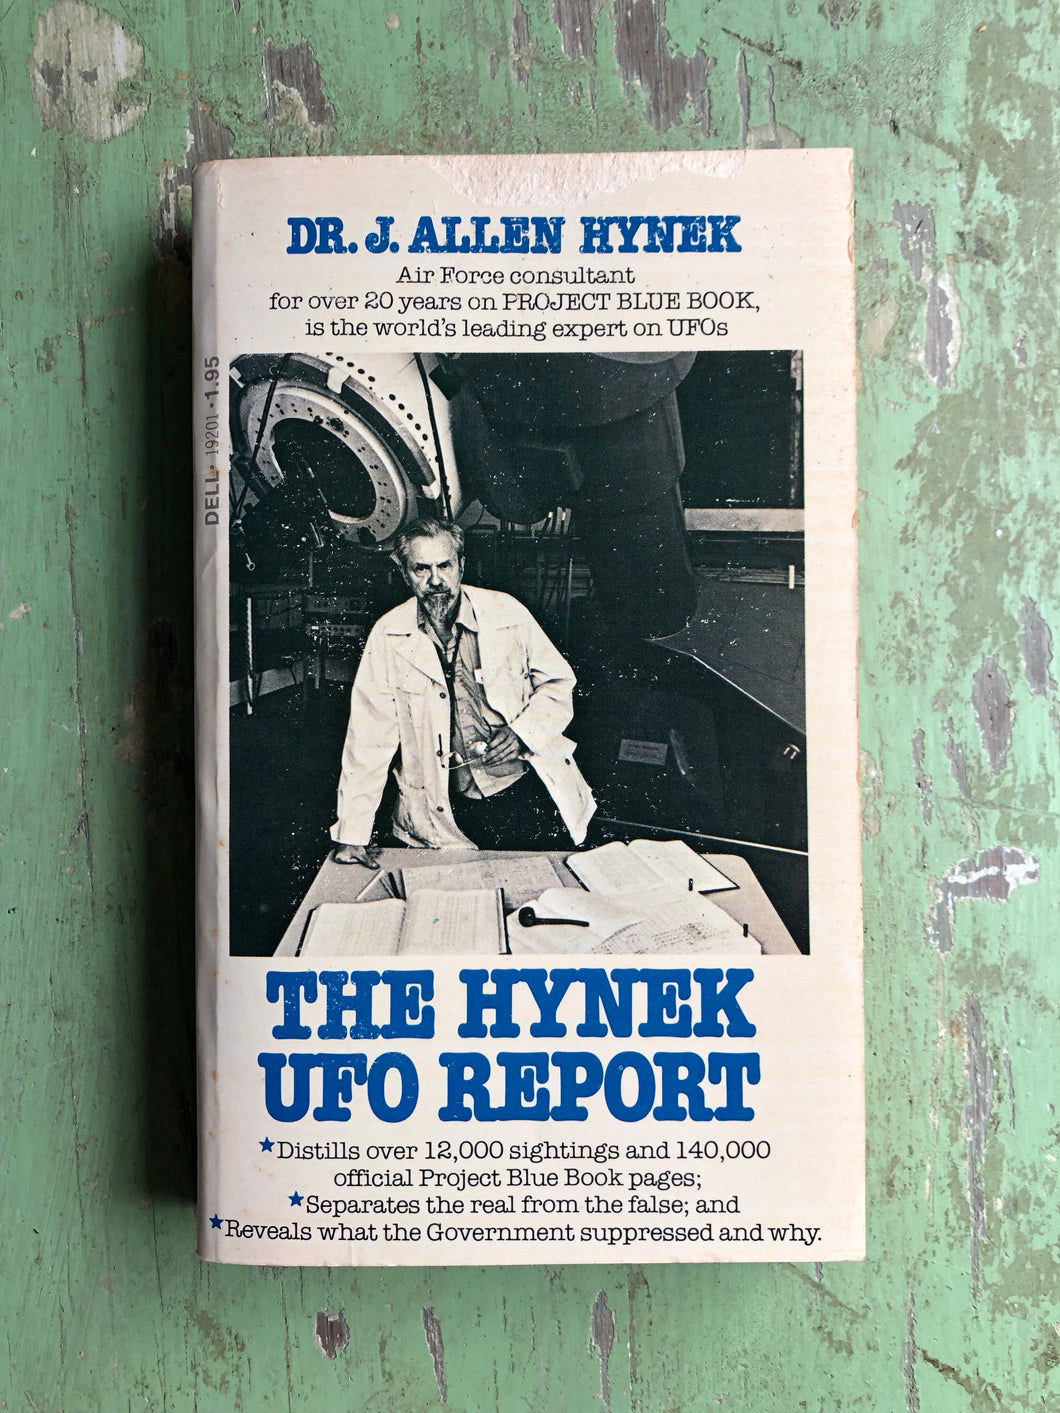 The Hynek UFO Report by Dr. J. Allen Hynek